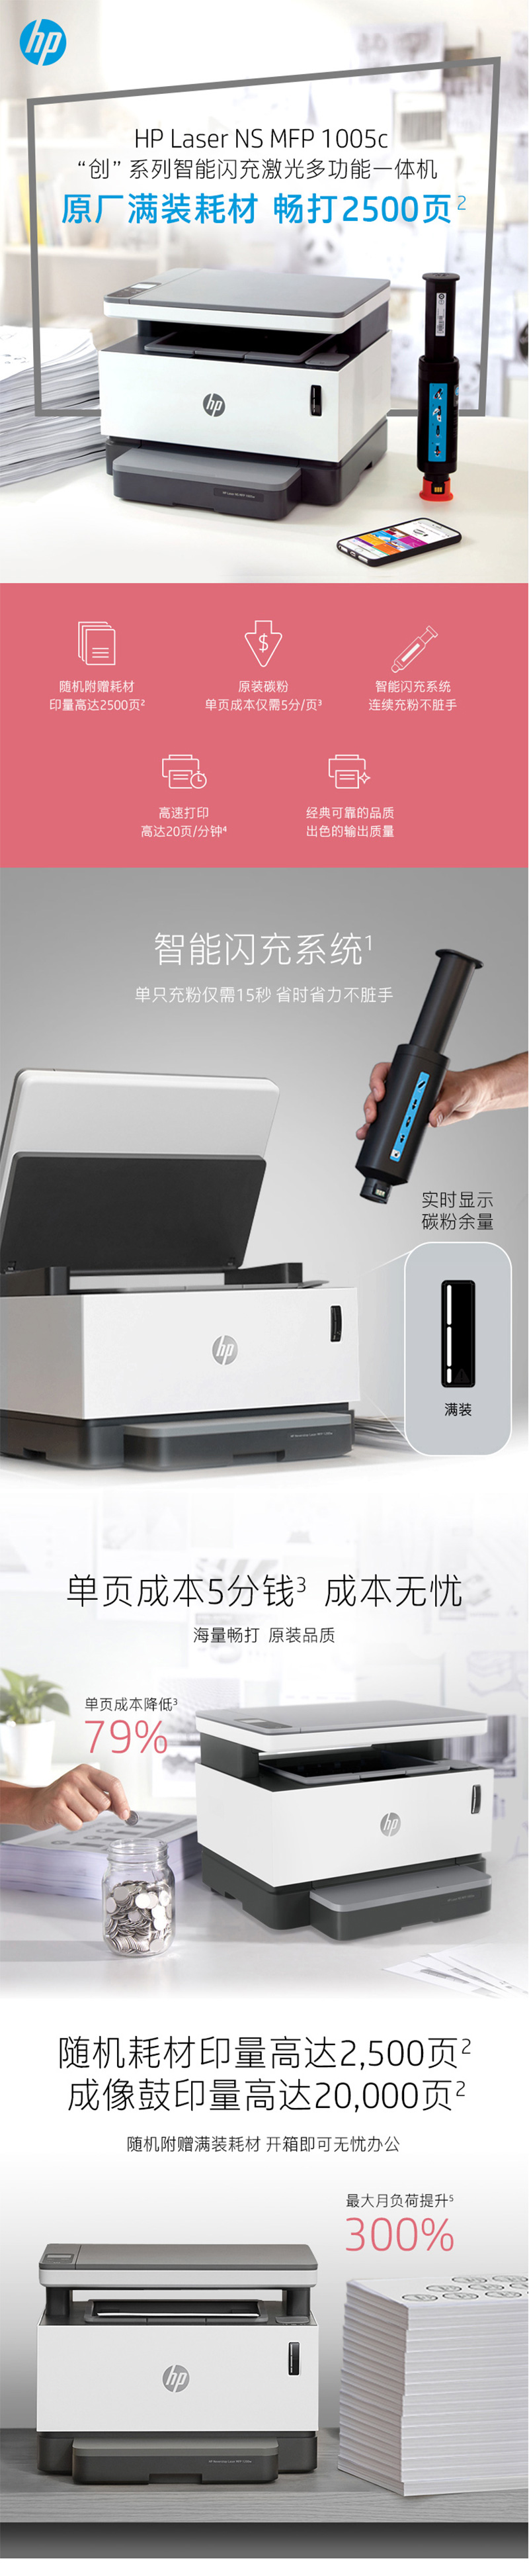 HP NS1005c 黑白激光打印机